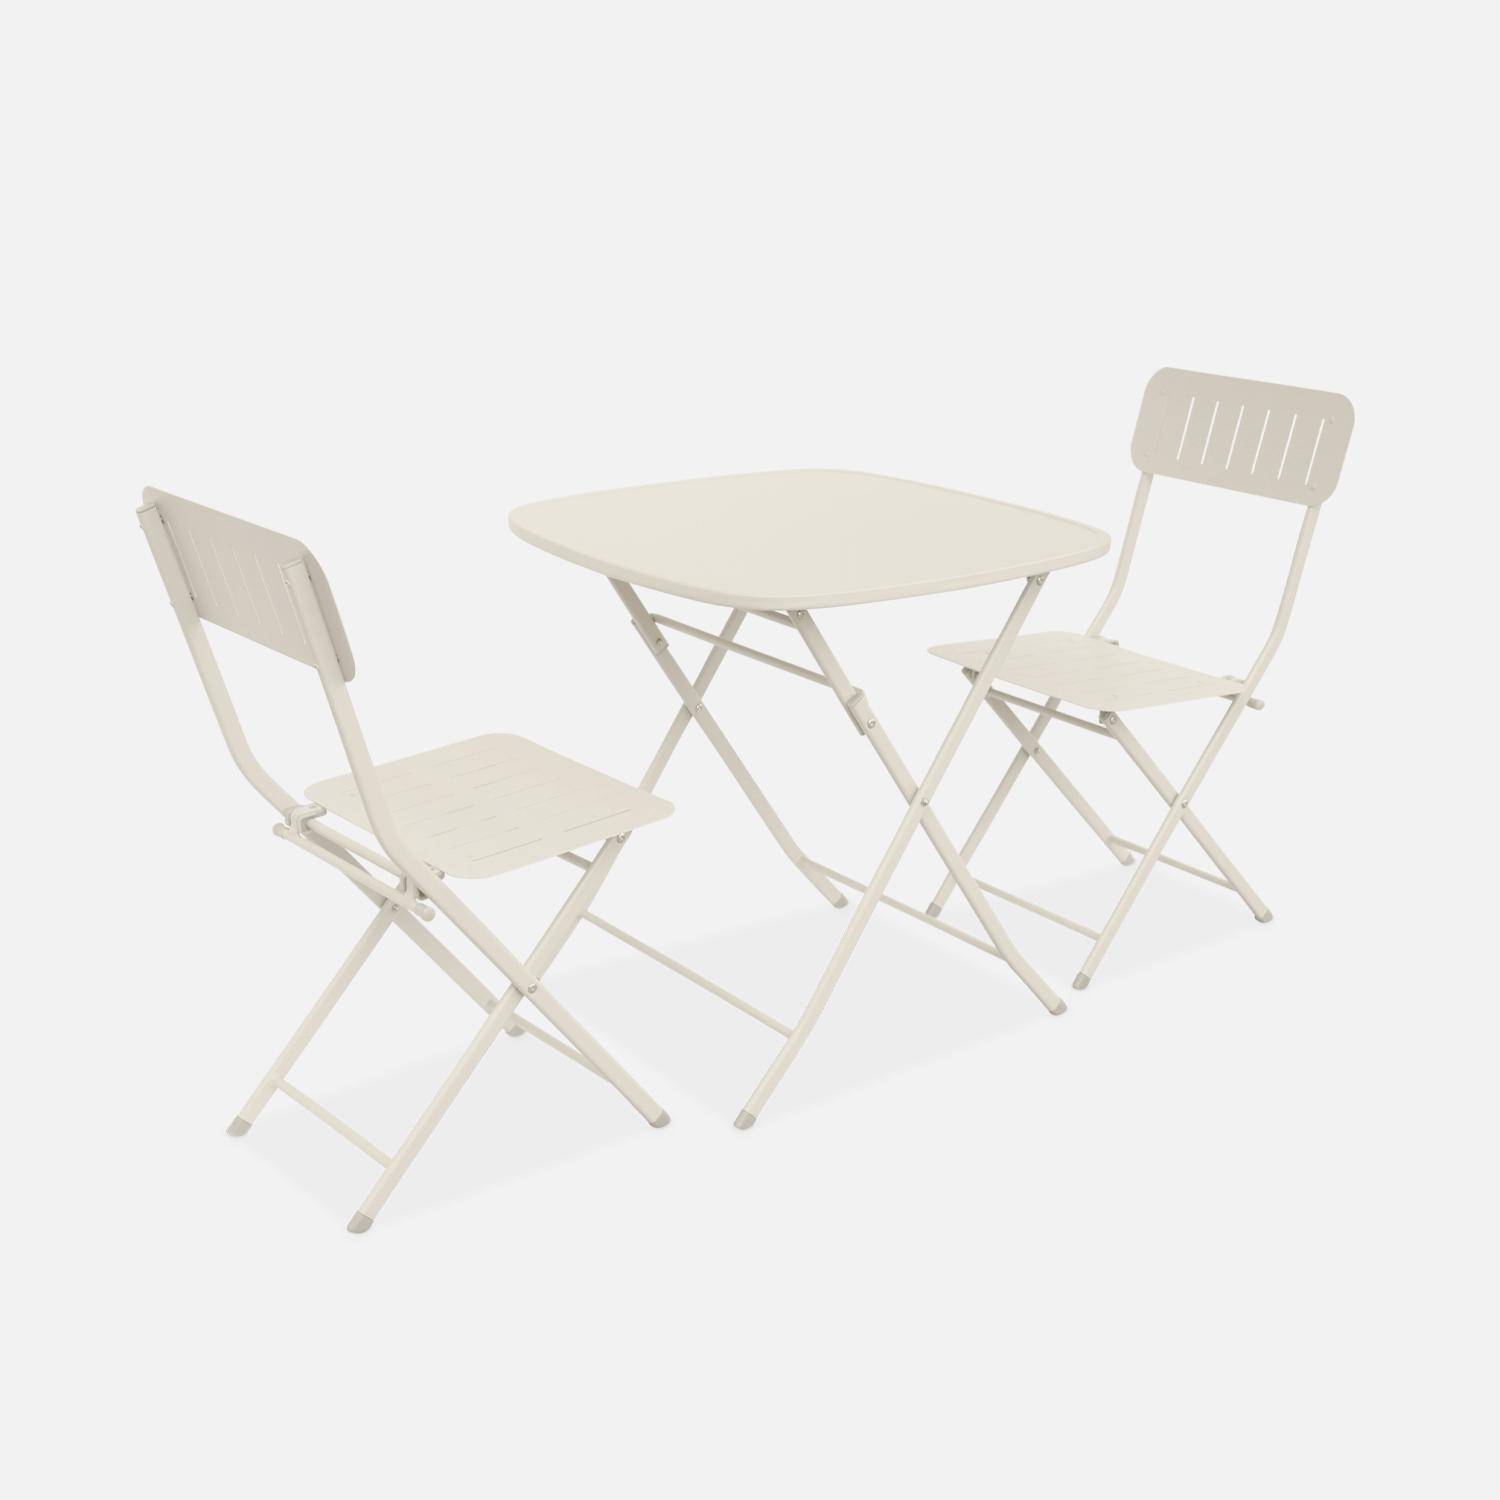 Table de jardin type bistrot pliable beige avec 2 chaises également pliables en acier galvanisé robuste,sweeek,Photo1